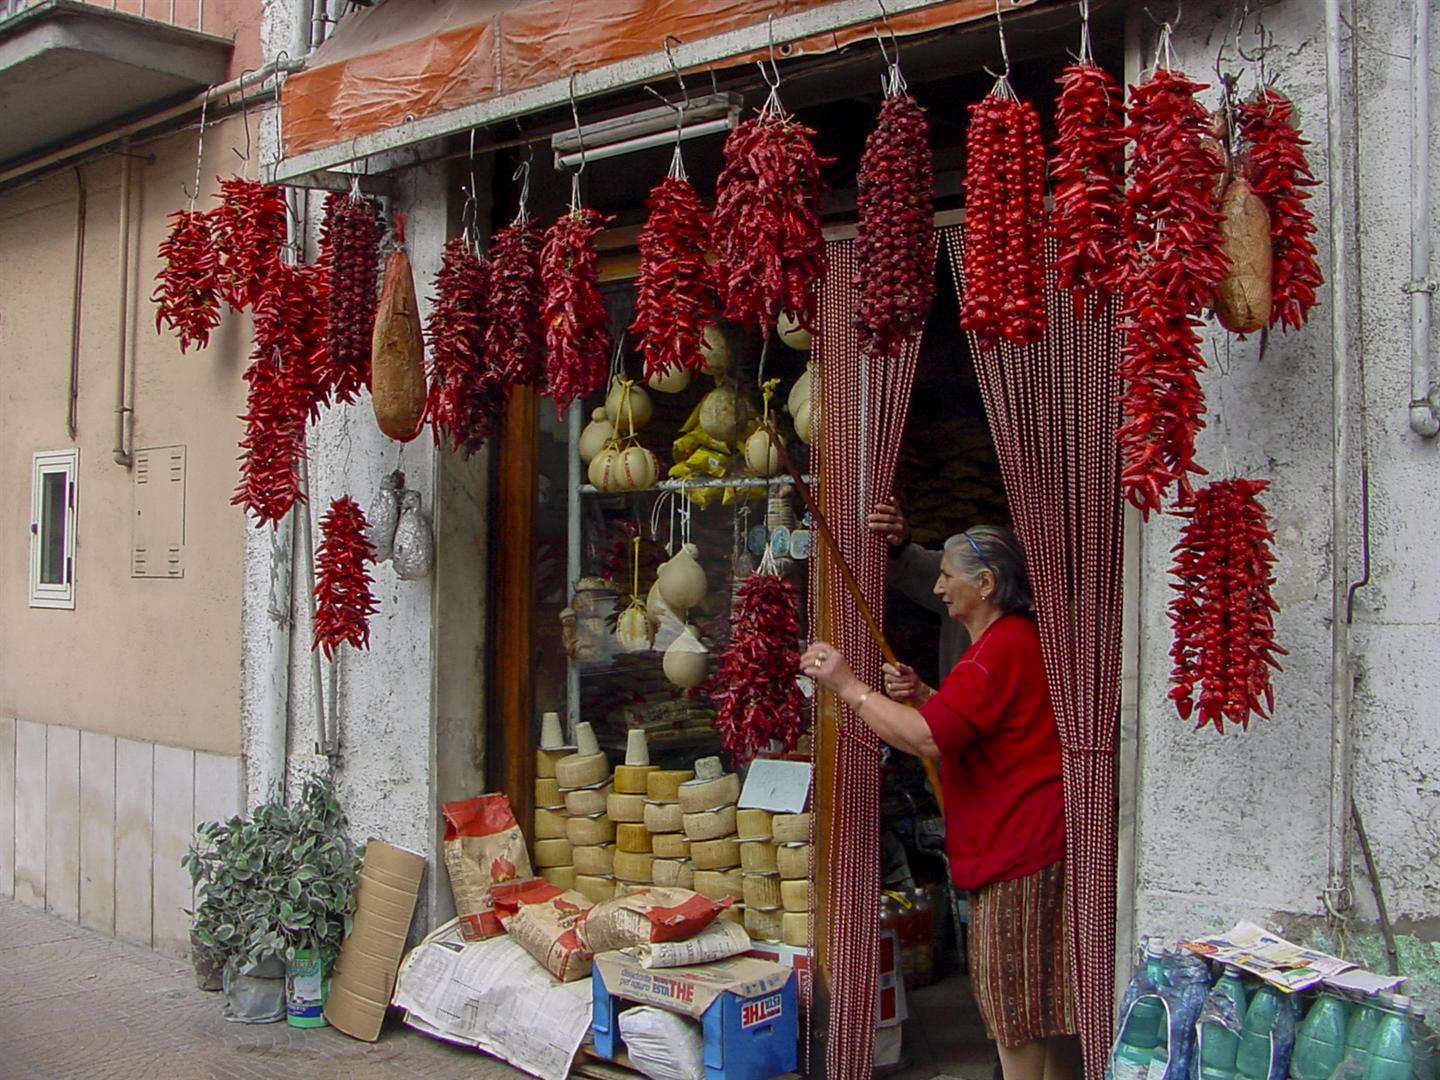 Store Keeper, Grattaminarda, Italy